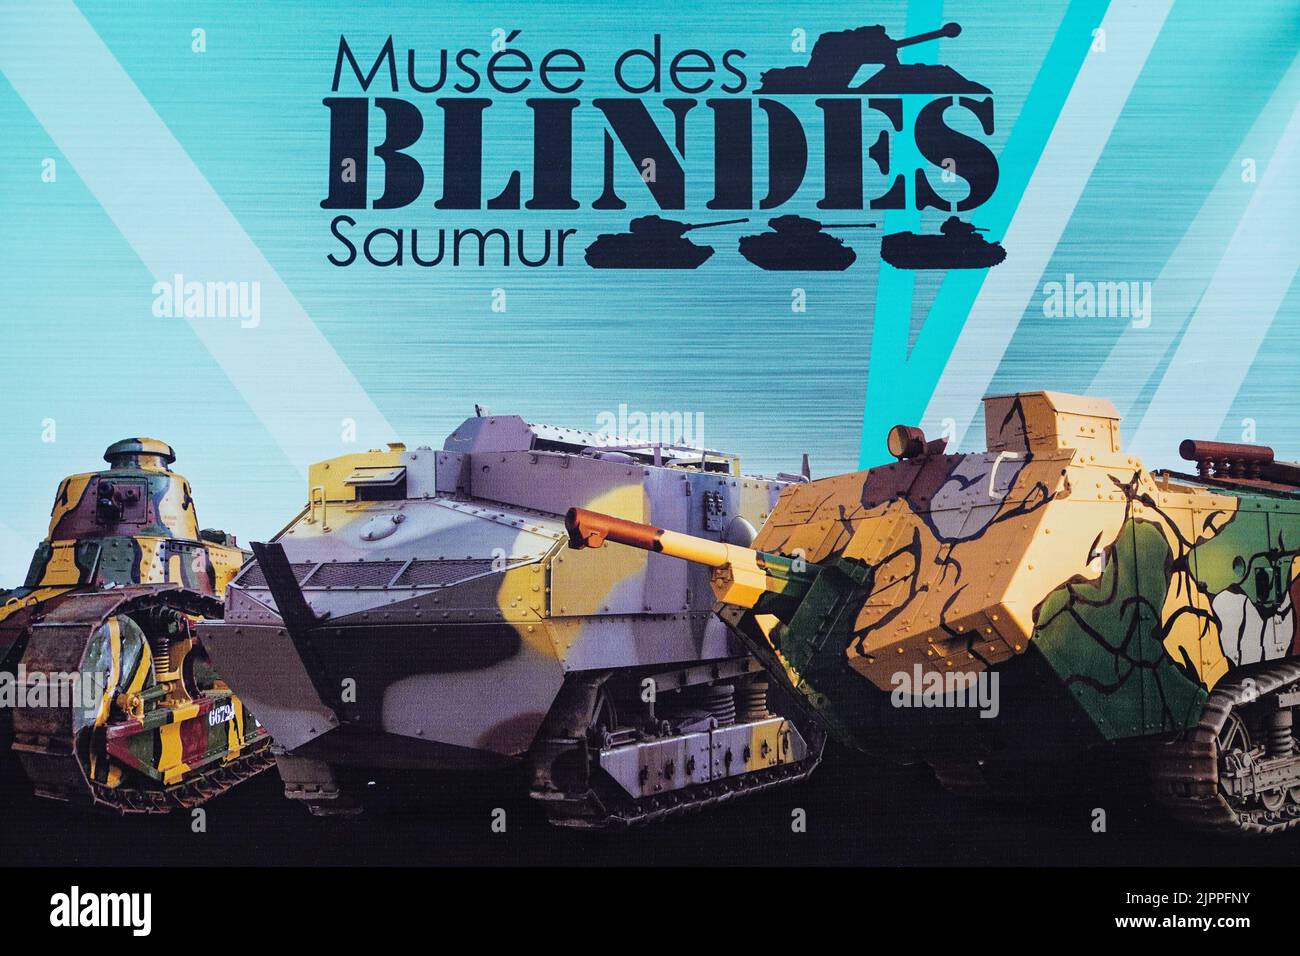 Poster illustrating tanks at Musèe des Blindes in Saumur, France Stock Photo